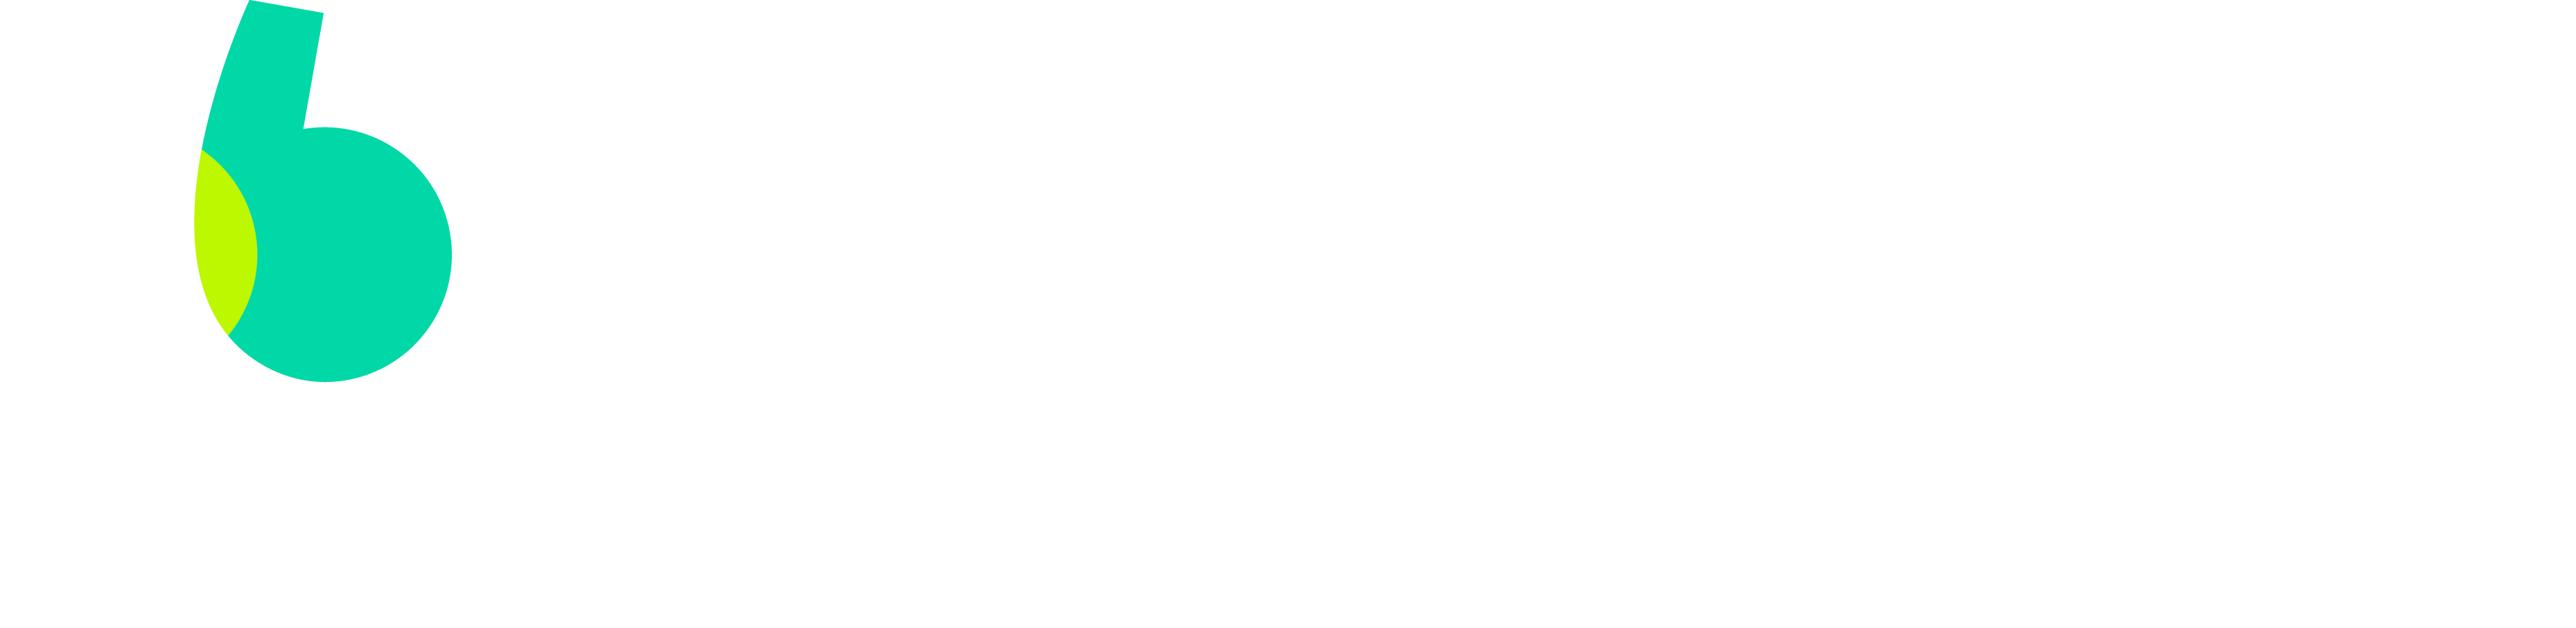 BlaBlaCarDaily-Entreprises_Logo_RGB_Horz-Main_Aqua